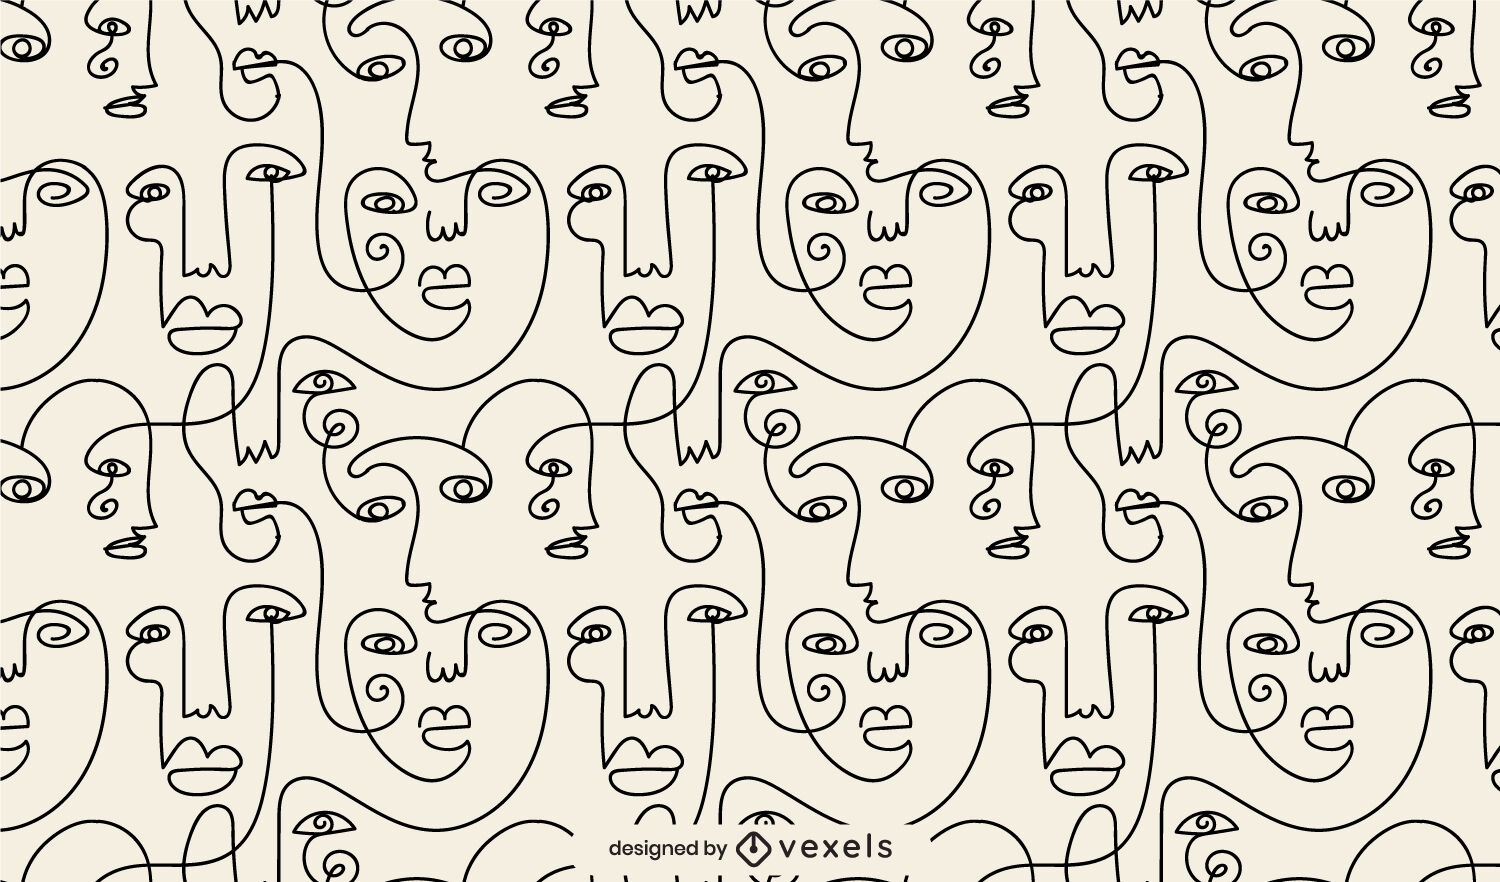 Abstraktes Musterdesign der menschlichen Gesichter